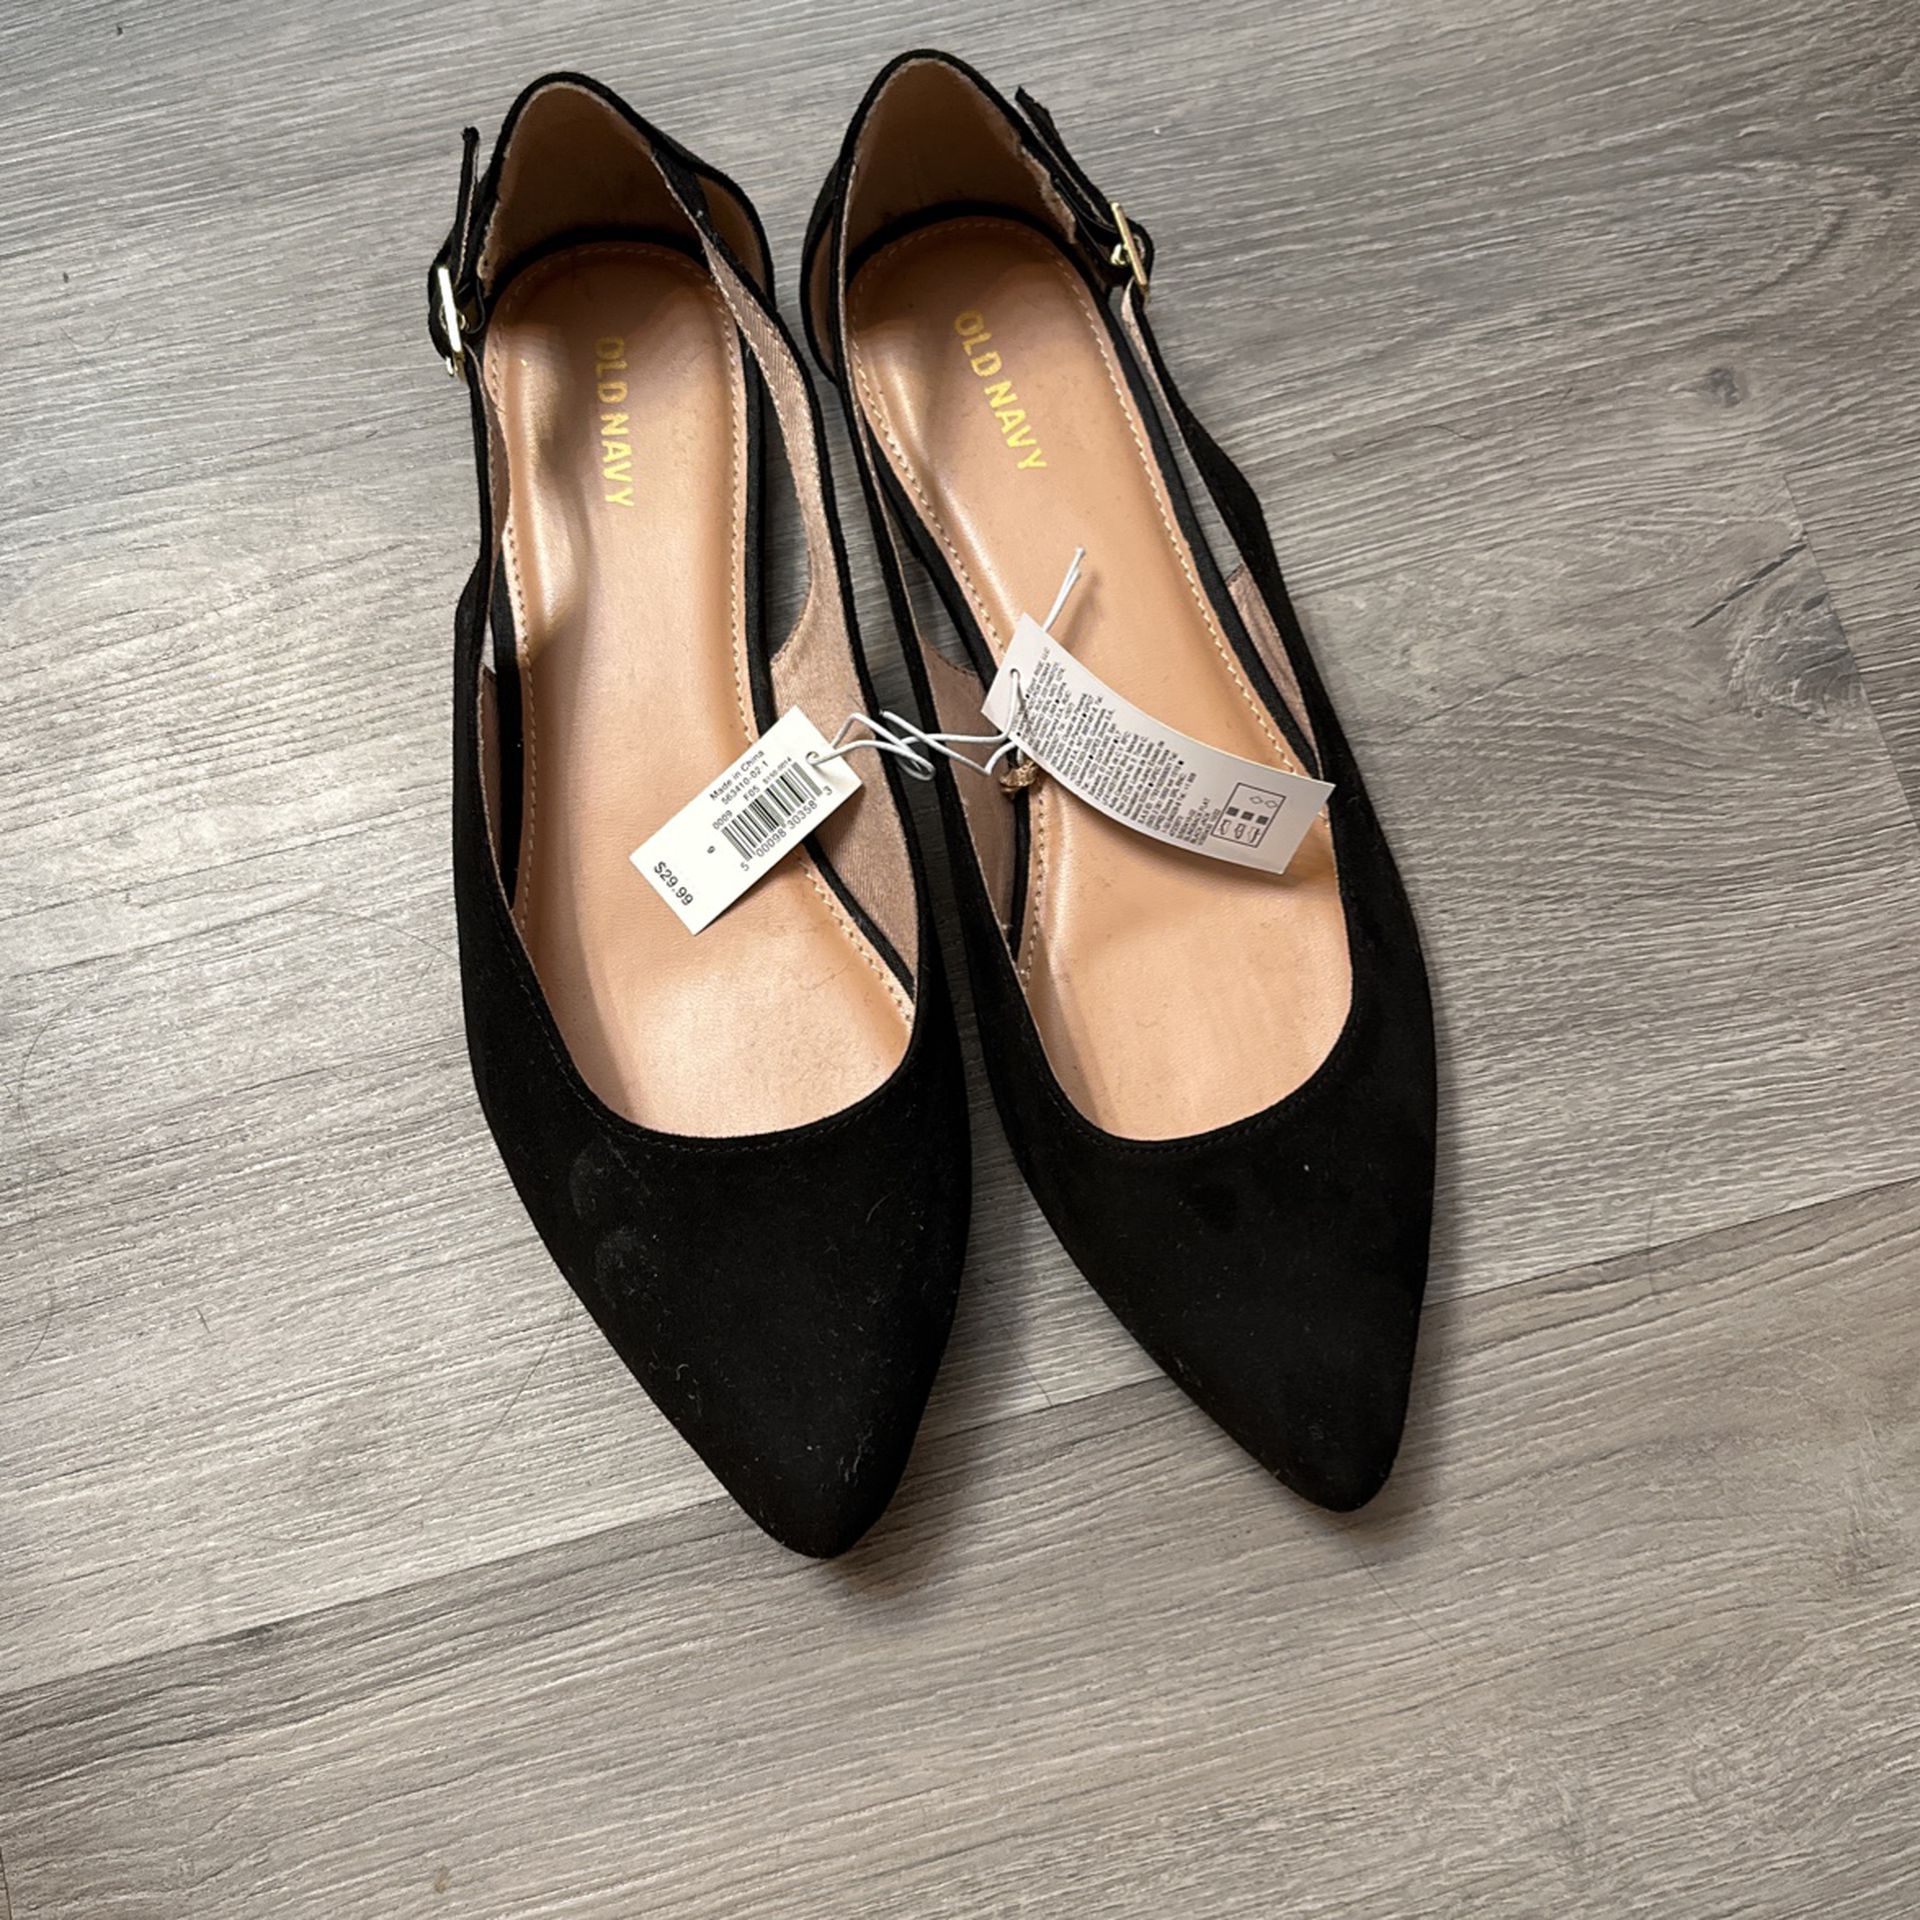 Women Shoes Never Worn Size 7-8 (heels, Flats, Sandals)